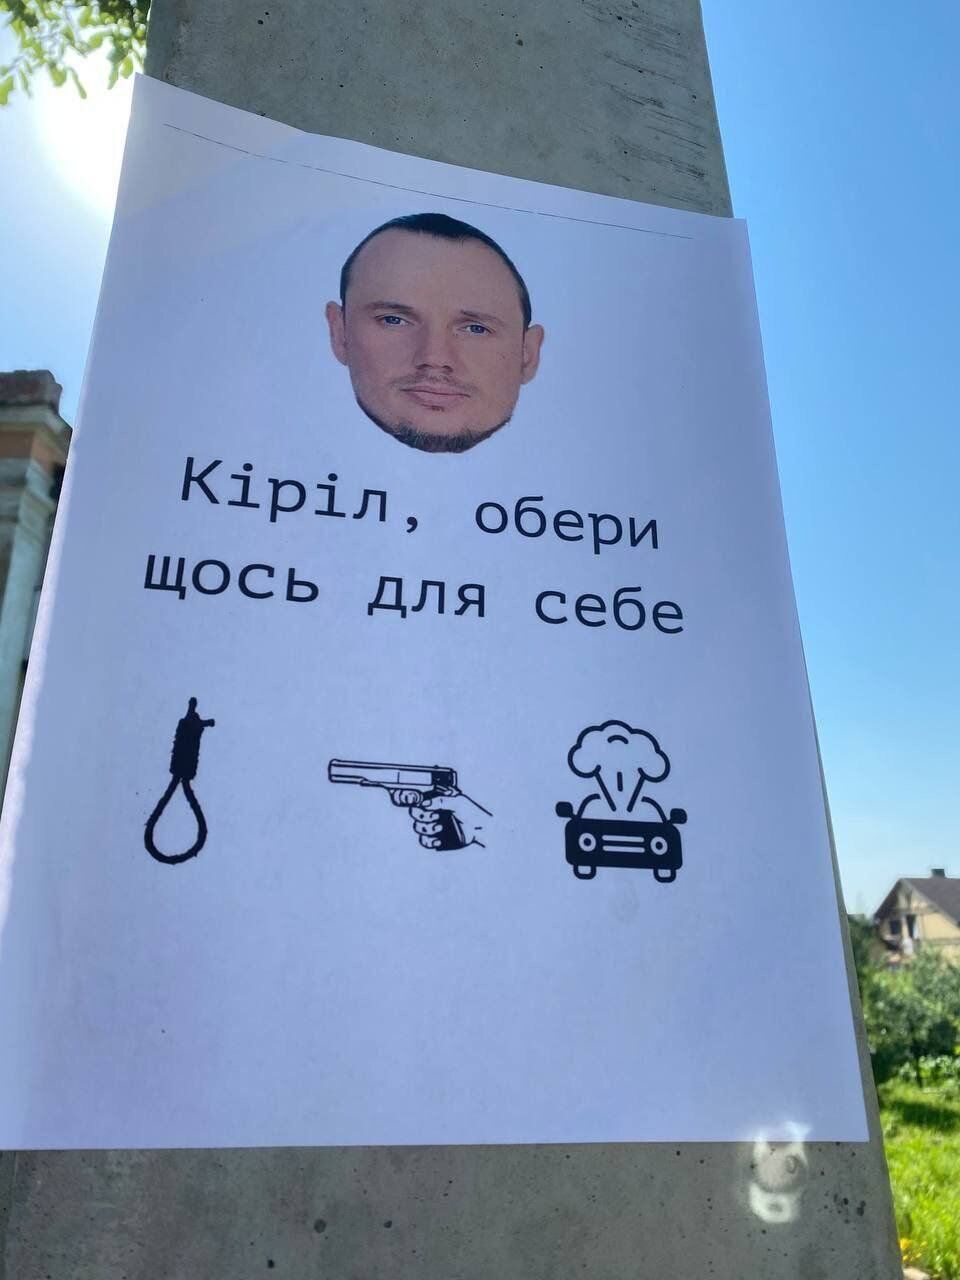 "Кирилл, выбери что-то для себя", – призывают партизаны Стремоусова